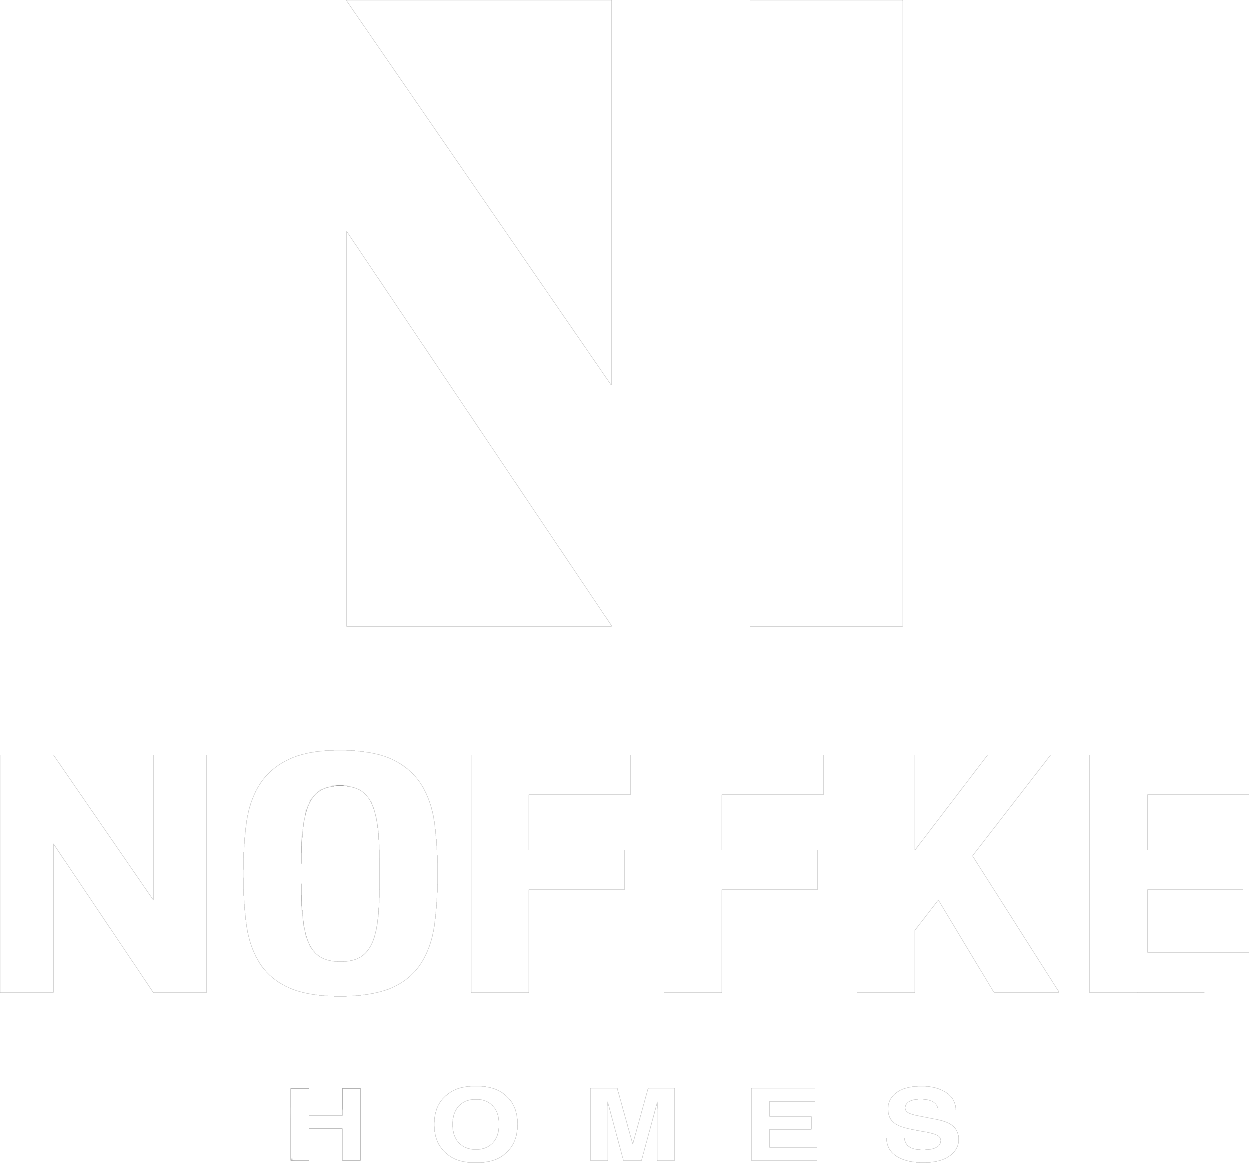 Noffke Homes